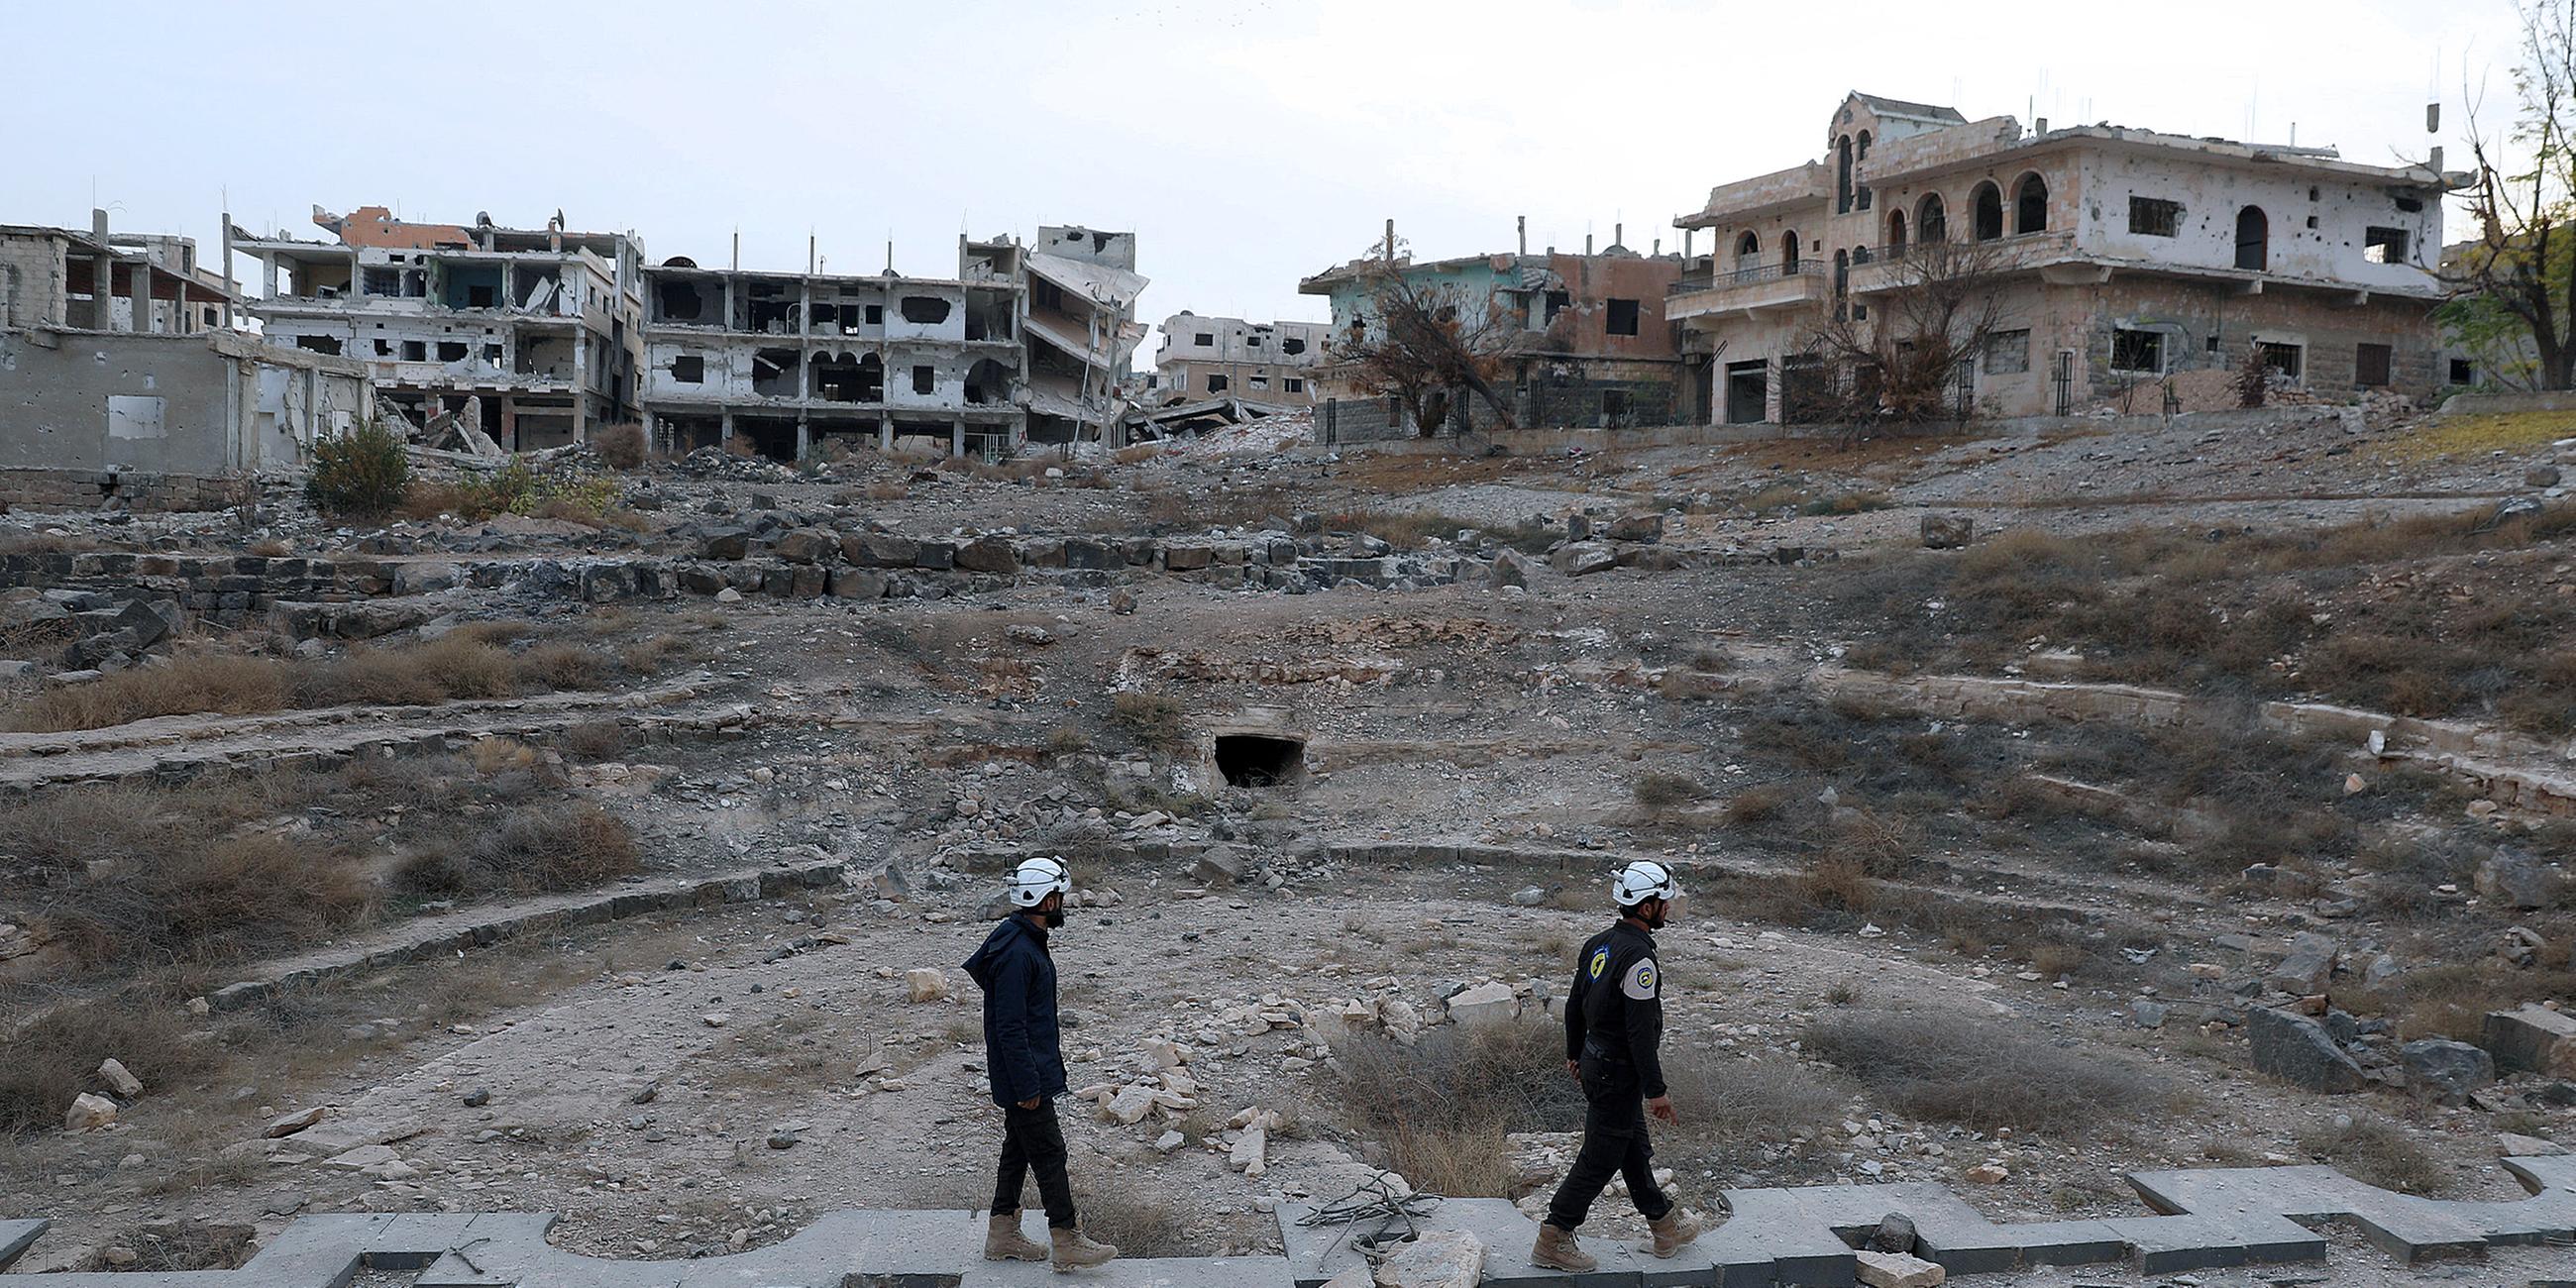 Archiv: Zerstörung in Syrien, aufgenommen am 23.12.2017 in den Ruinen von Daraa